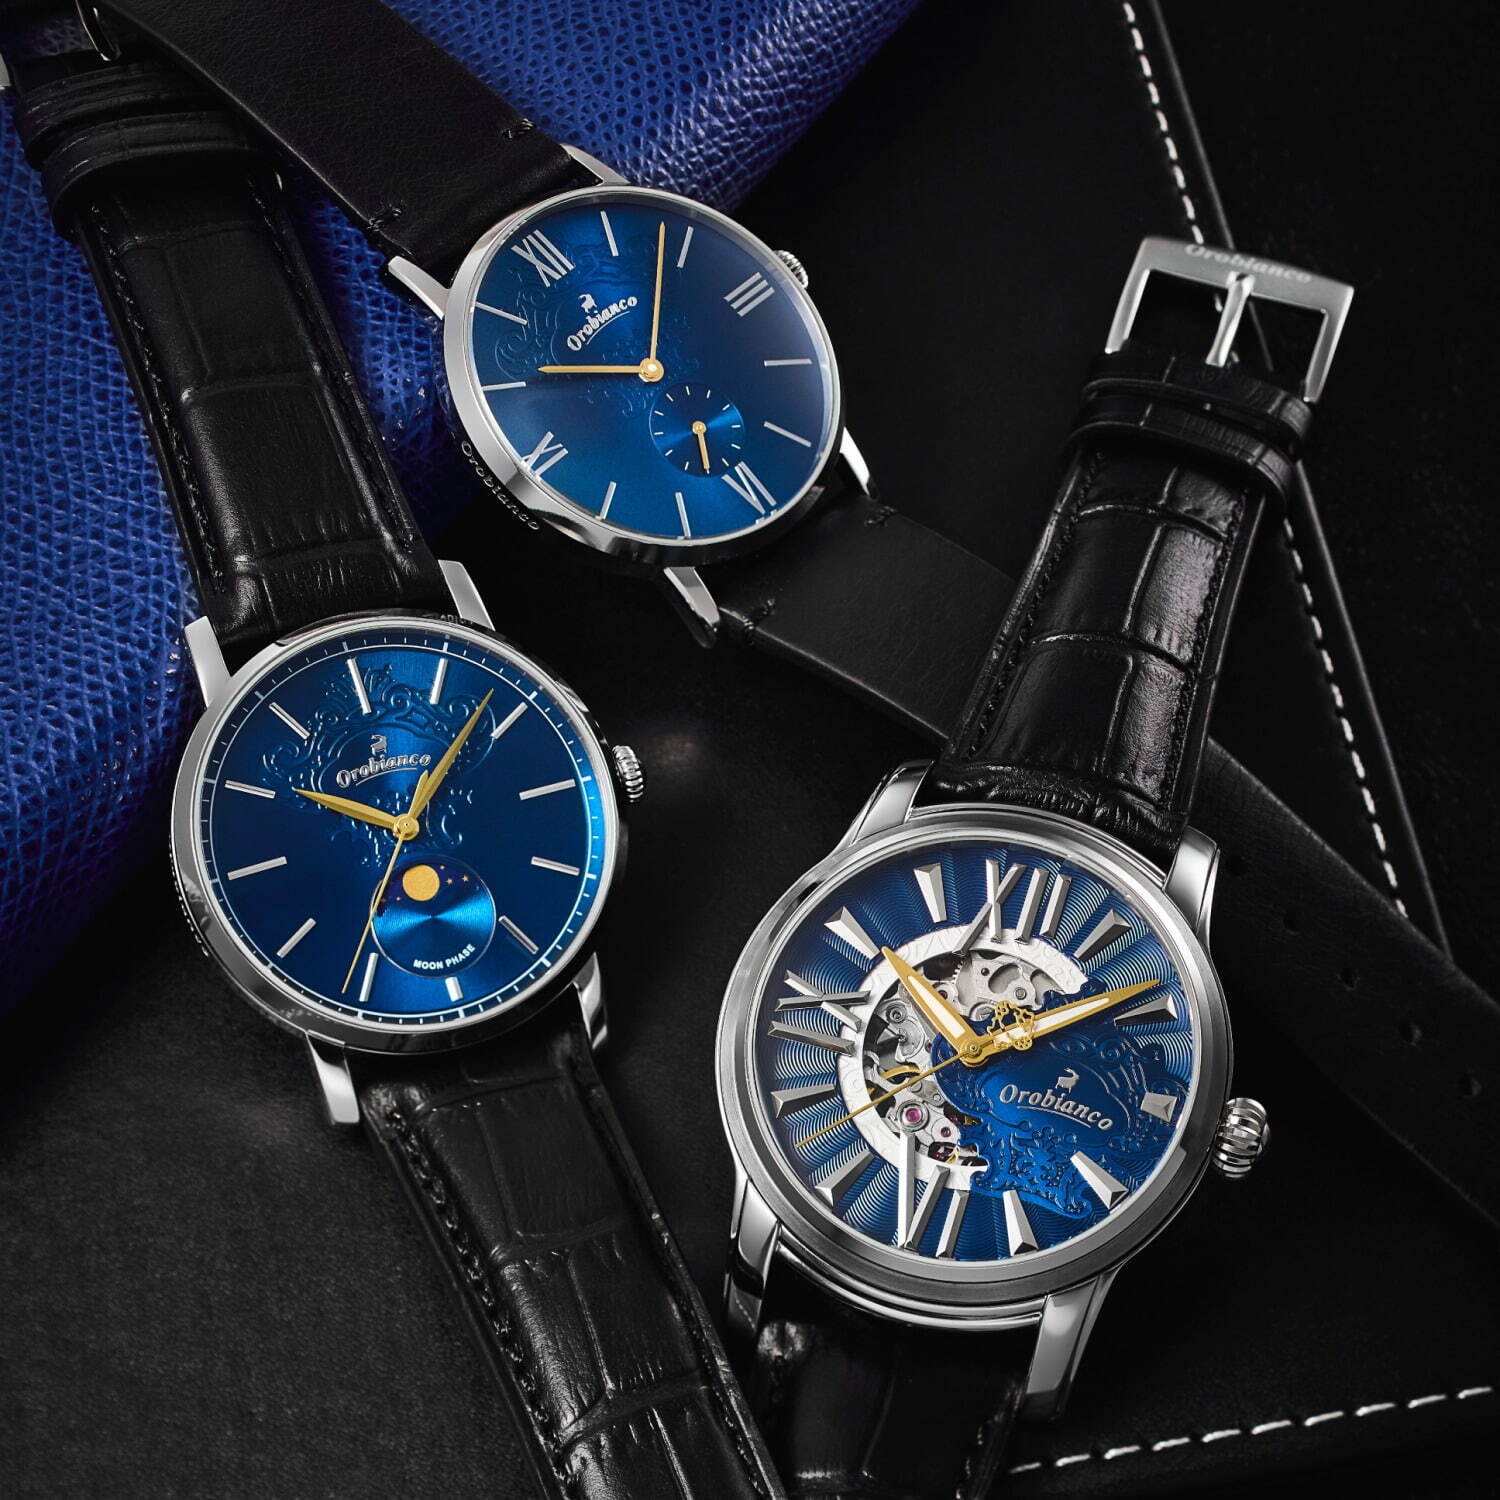 オロビアンコ25周年腕時計は夜空のような青色文字盤×漆黒ベルト - ザ